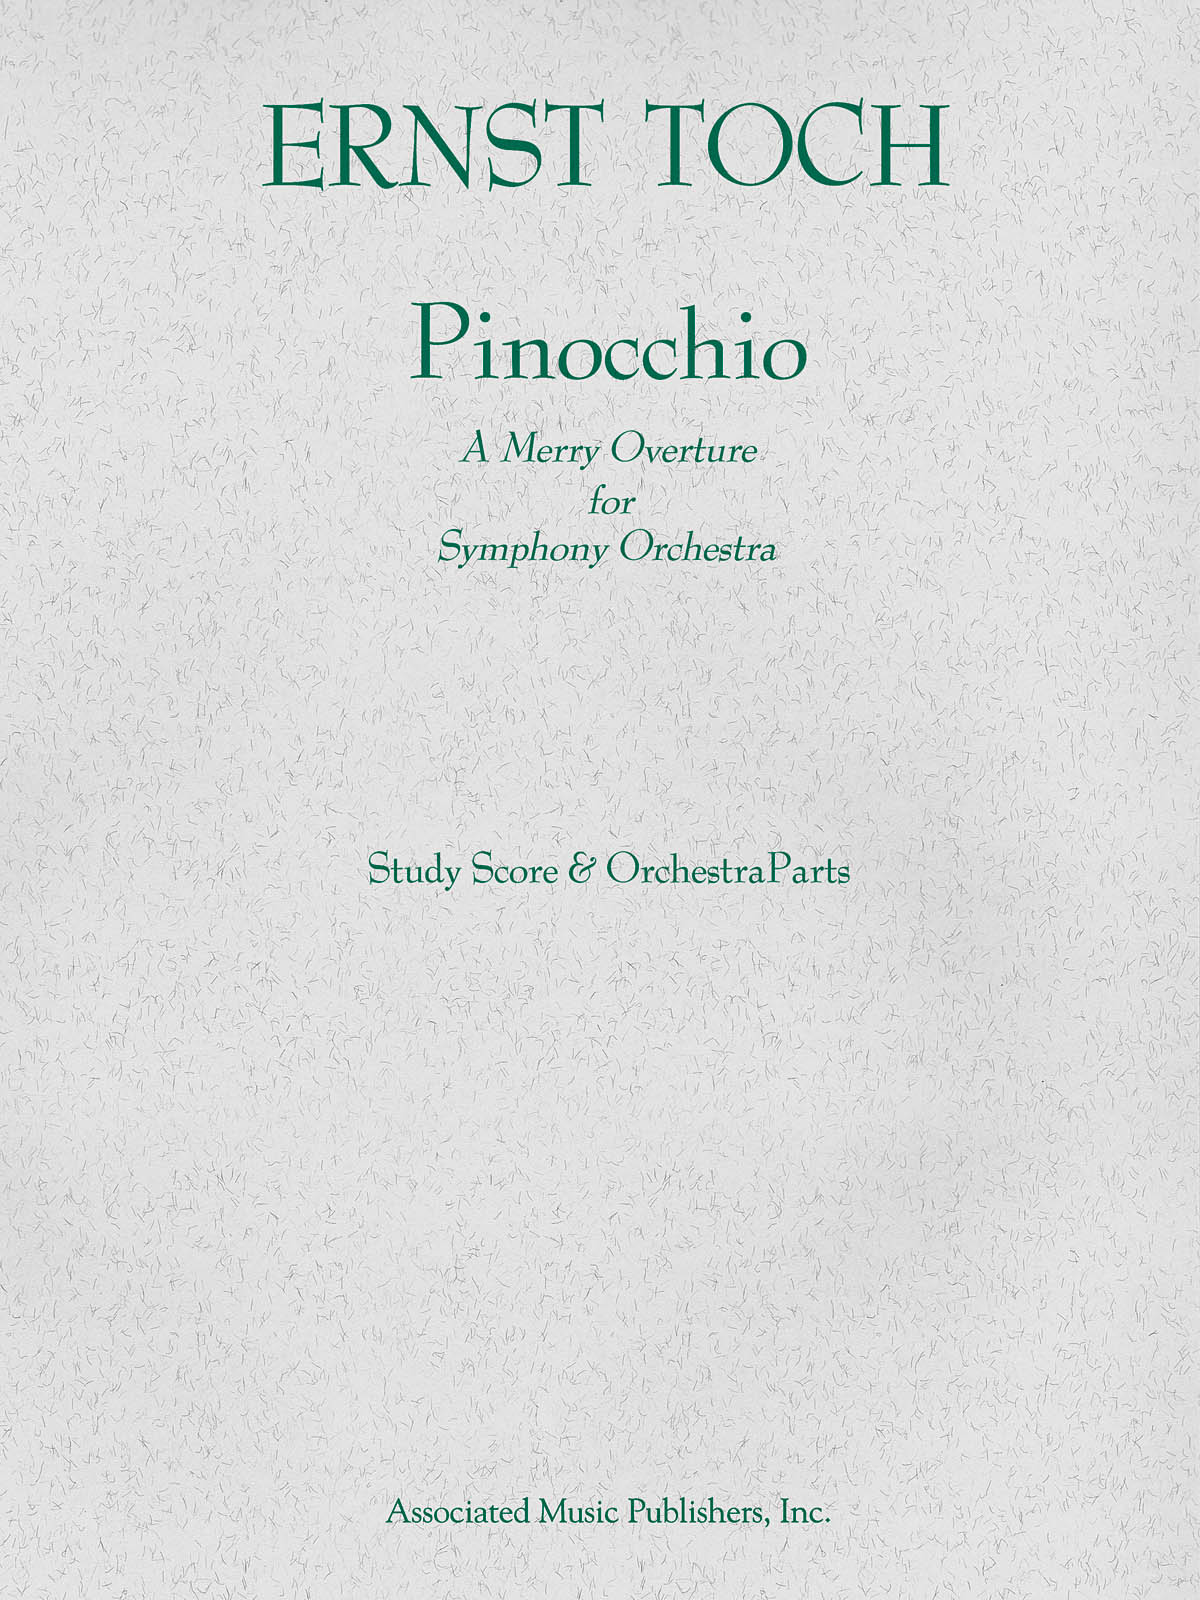 Ernst Toch: Pinocchio